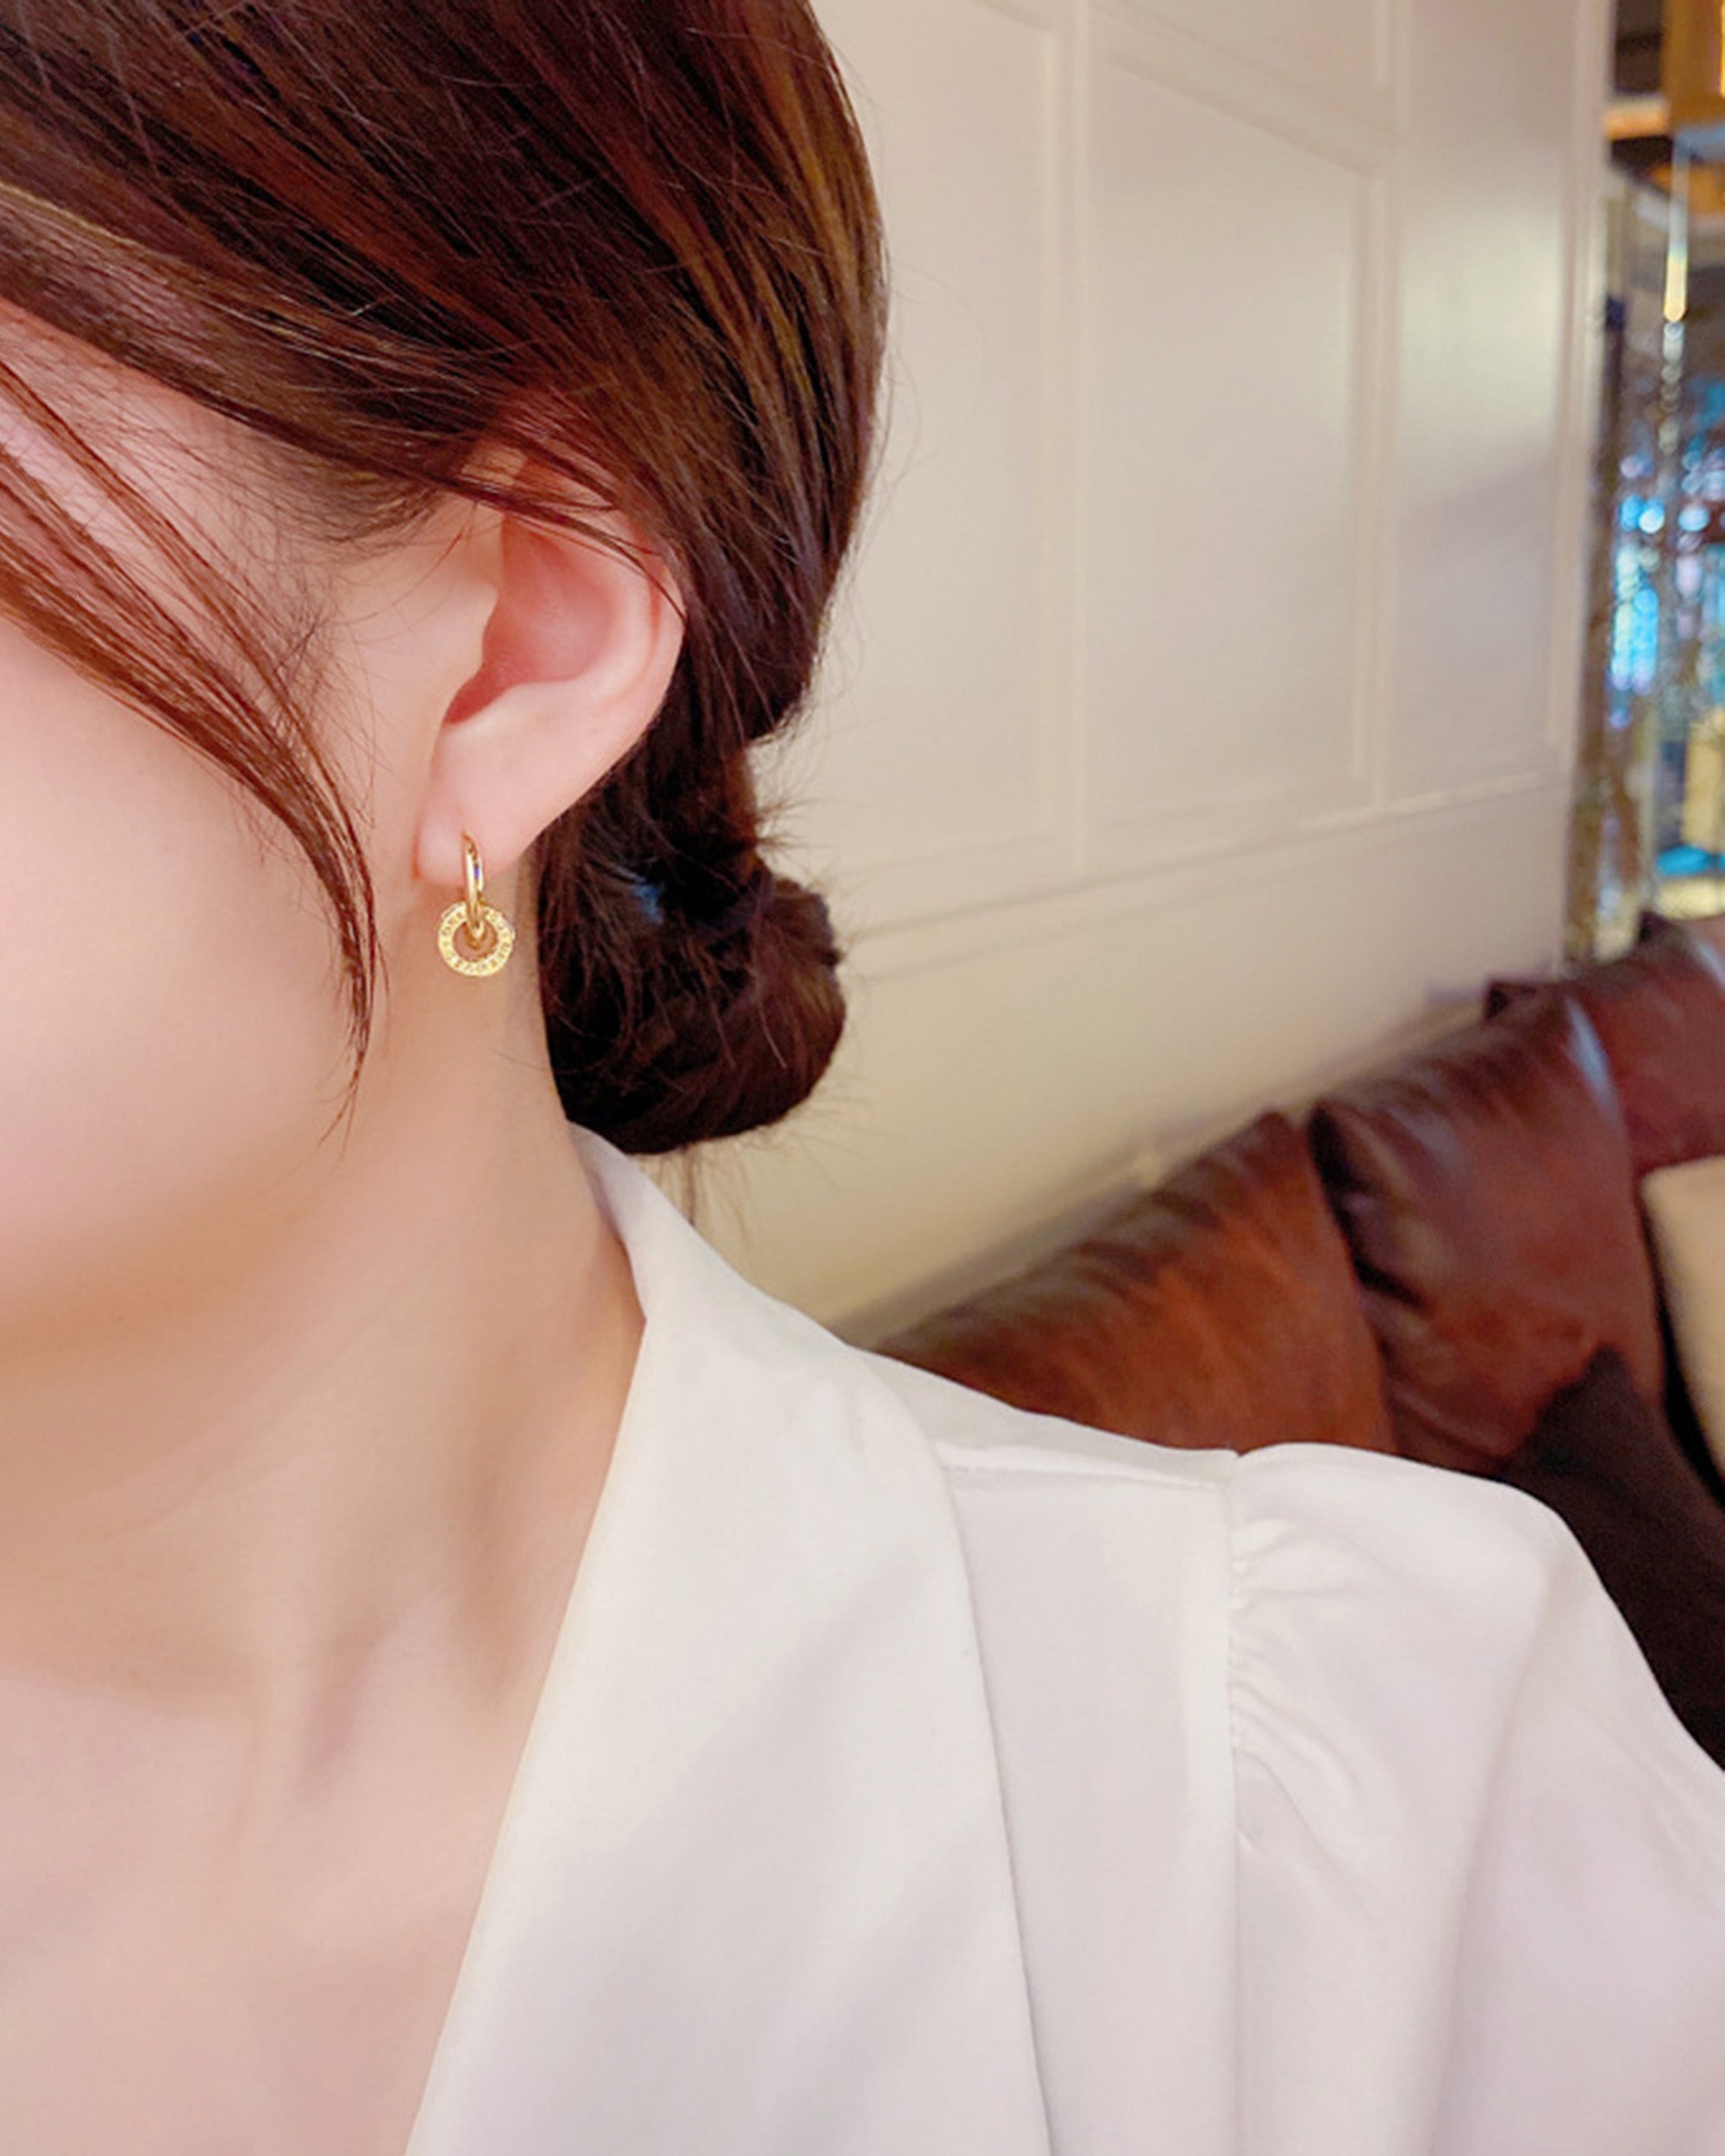 Bông tai Laura thương hiệu Junie - cô gái phối bông tai với thời trang công sở thanh lịch